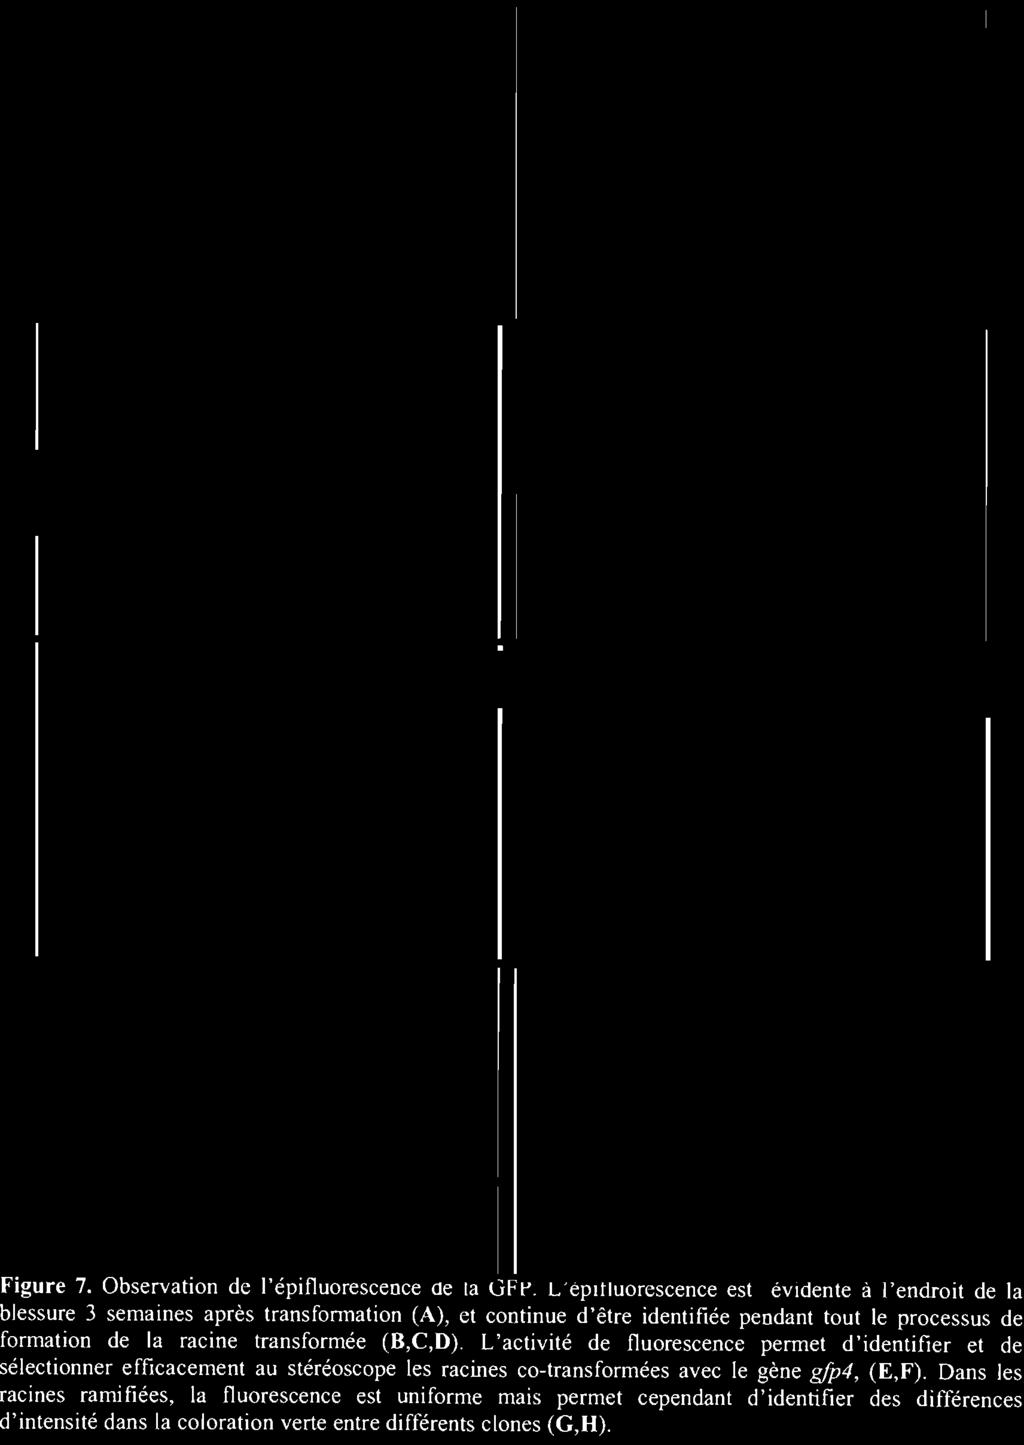 processus de formation de la racine transformée (R,C,D).